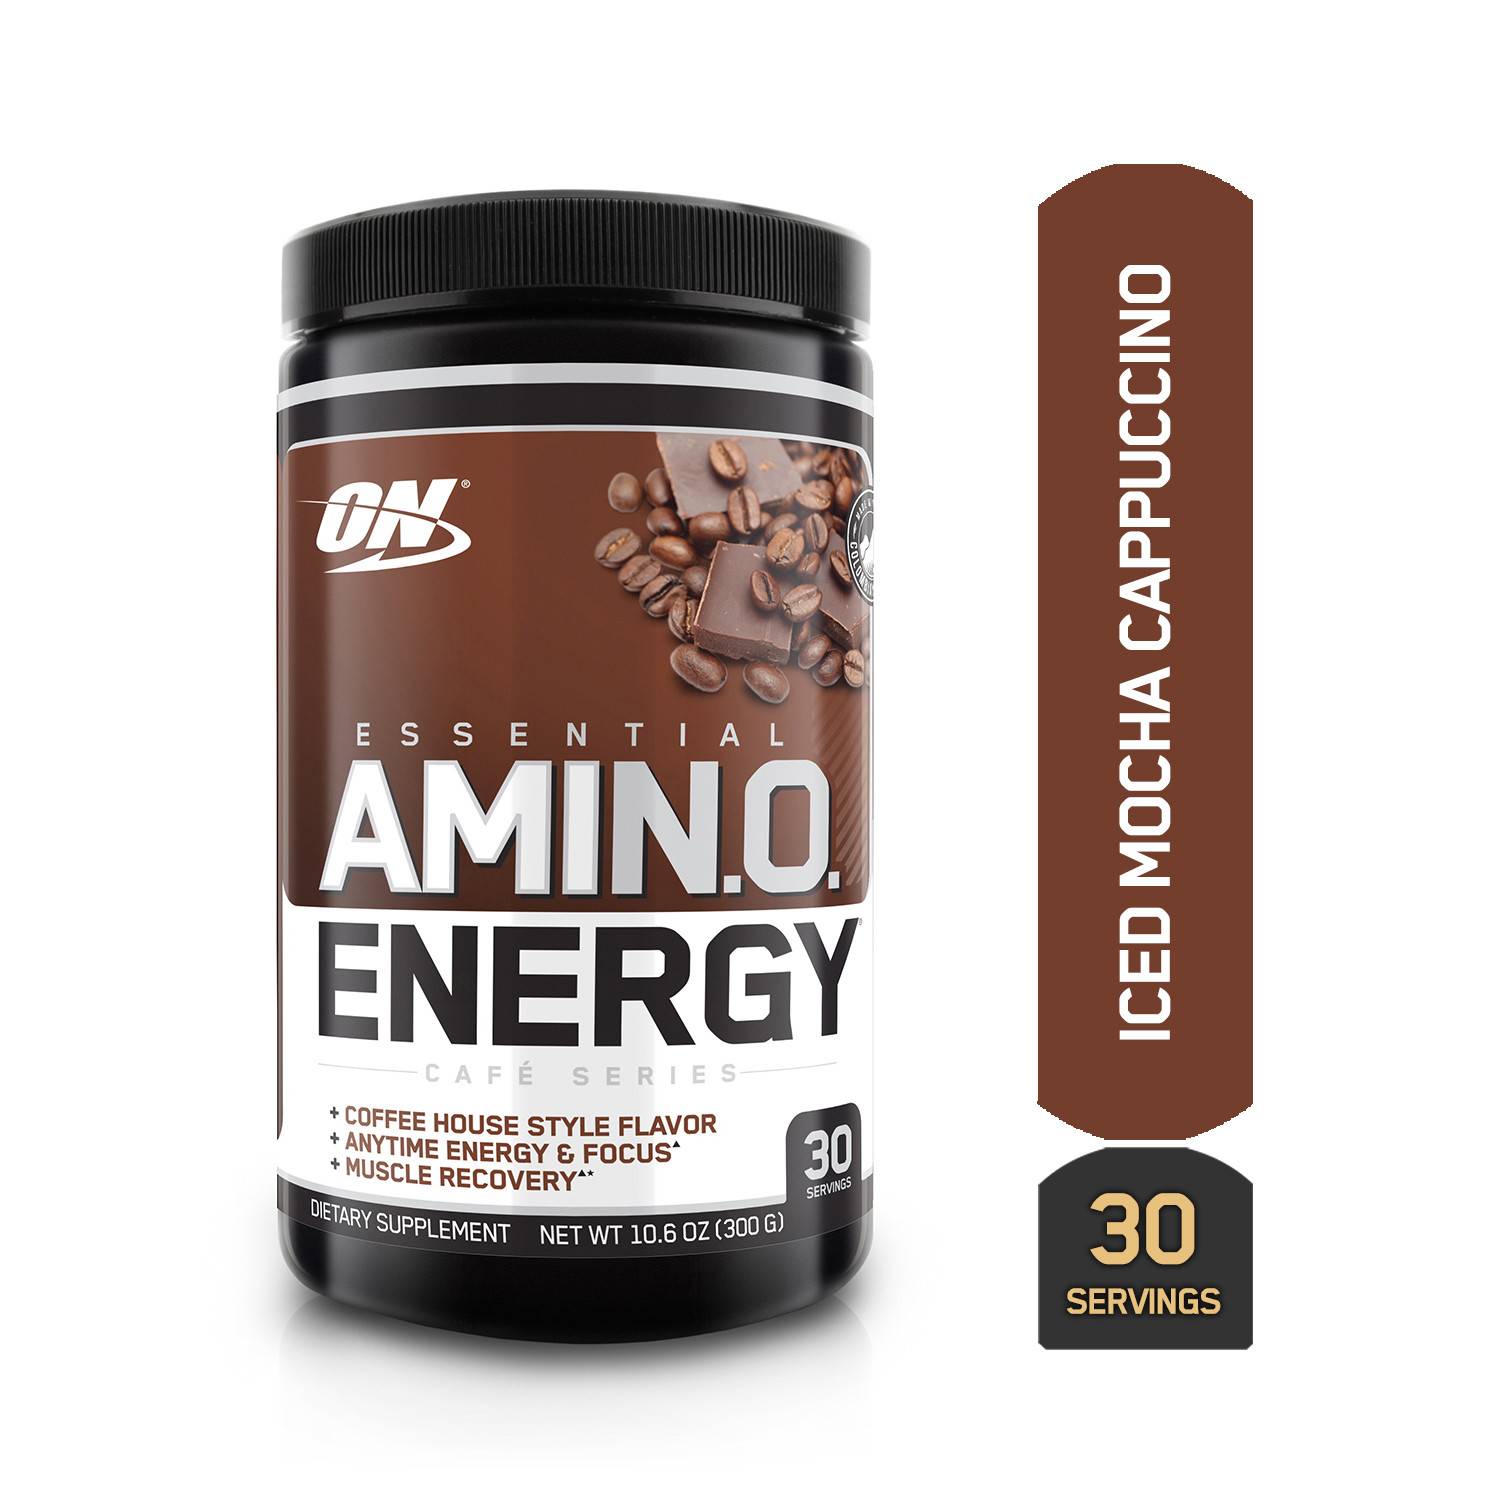 Amino energy от optimum nutrition: как принимать, состав, отзывы